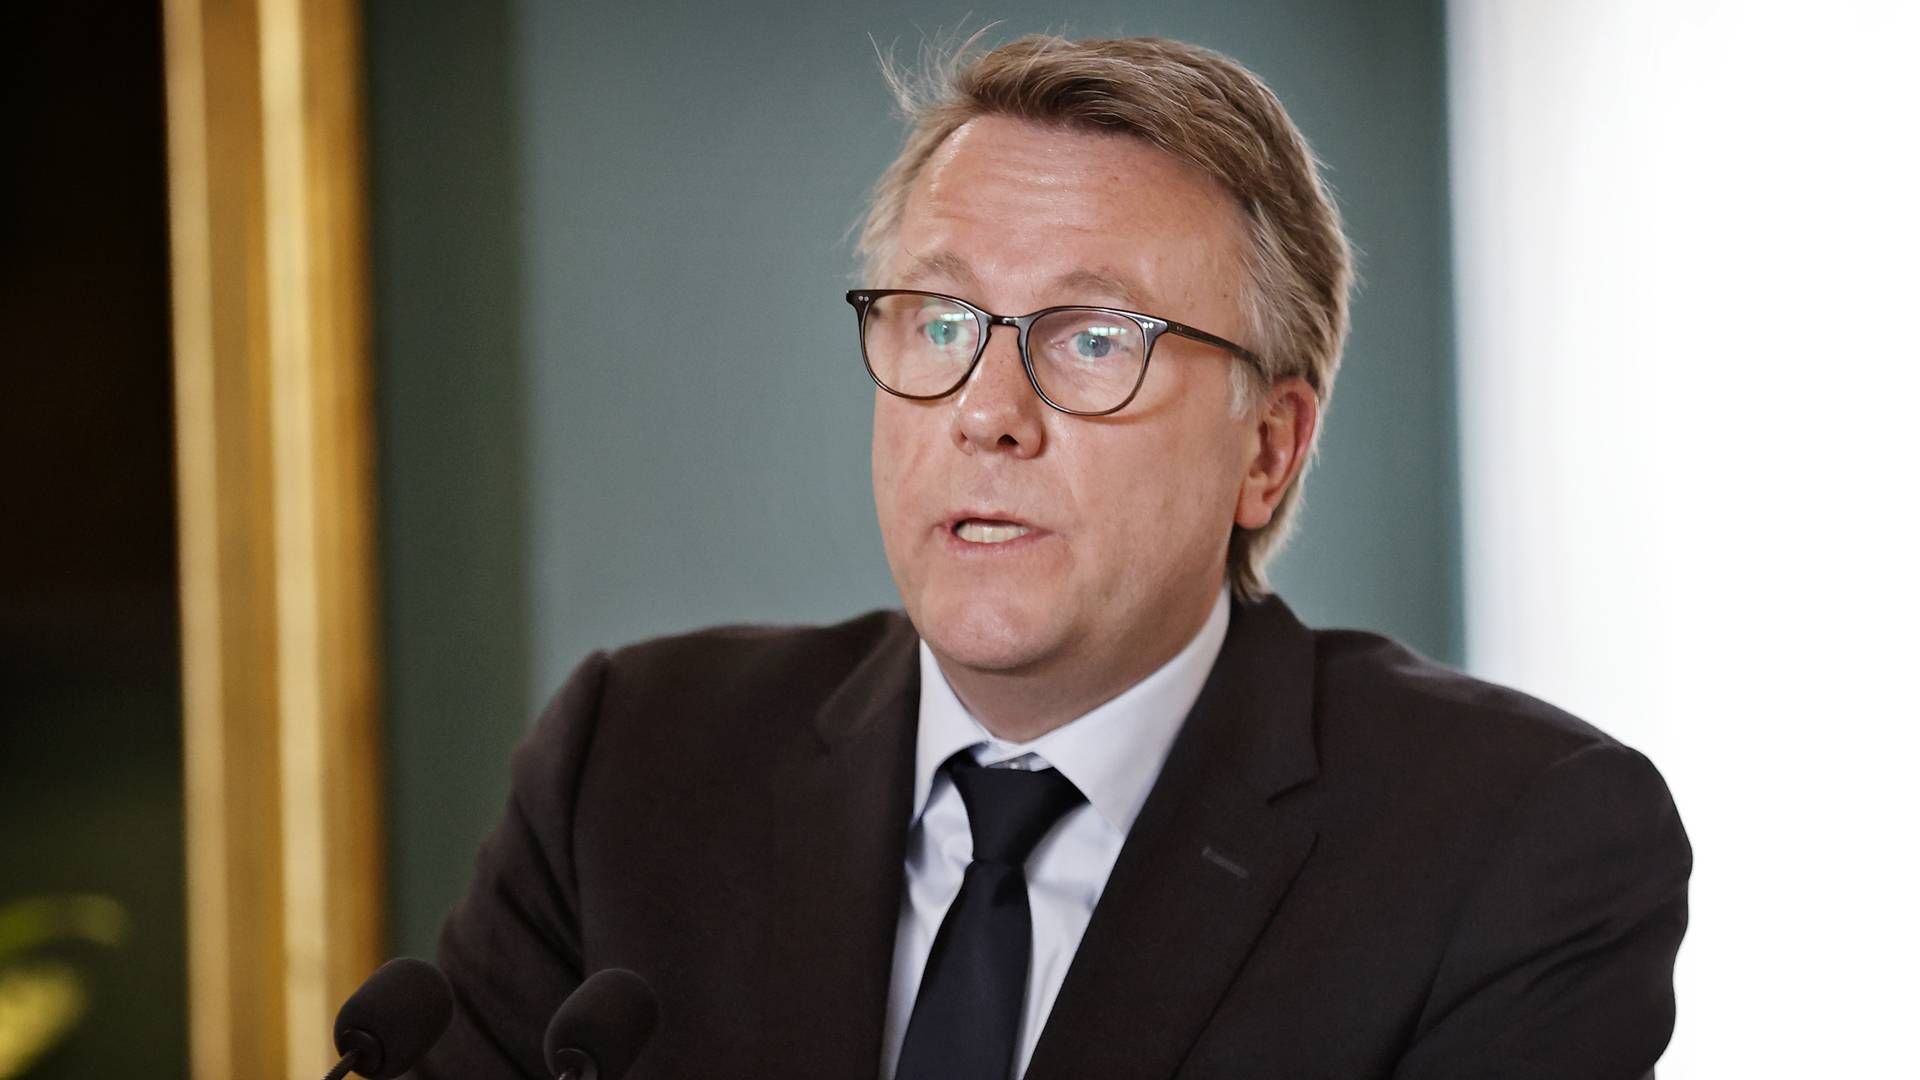 Skatteminister Morten Bødskov mener, at det har været helt nødvendigt at investere massivt i skattevæsenet. | Foto: Jens Dresling